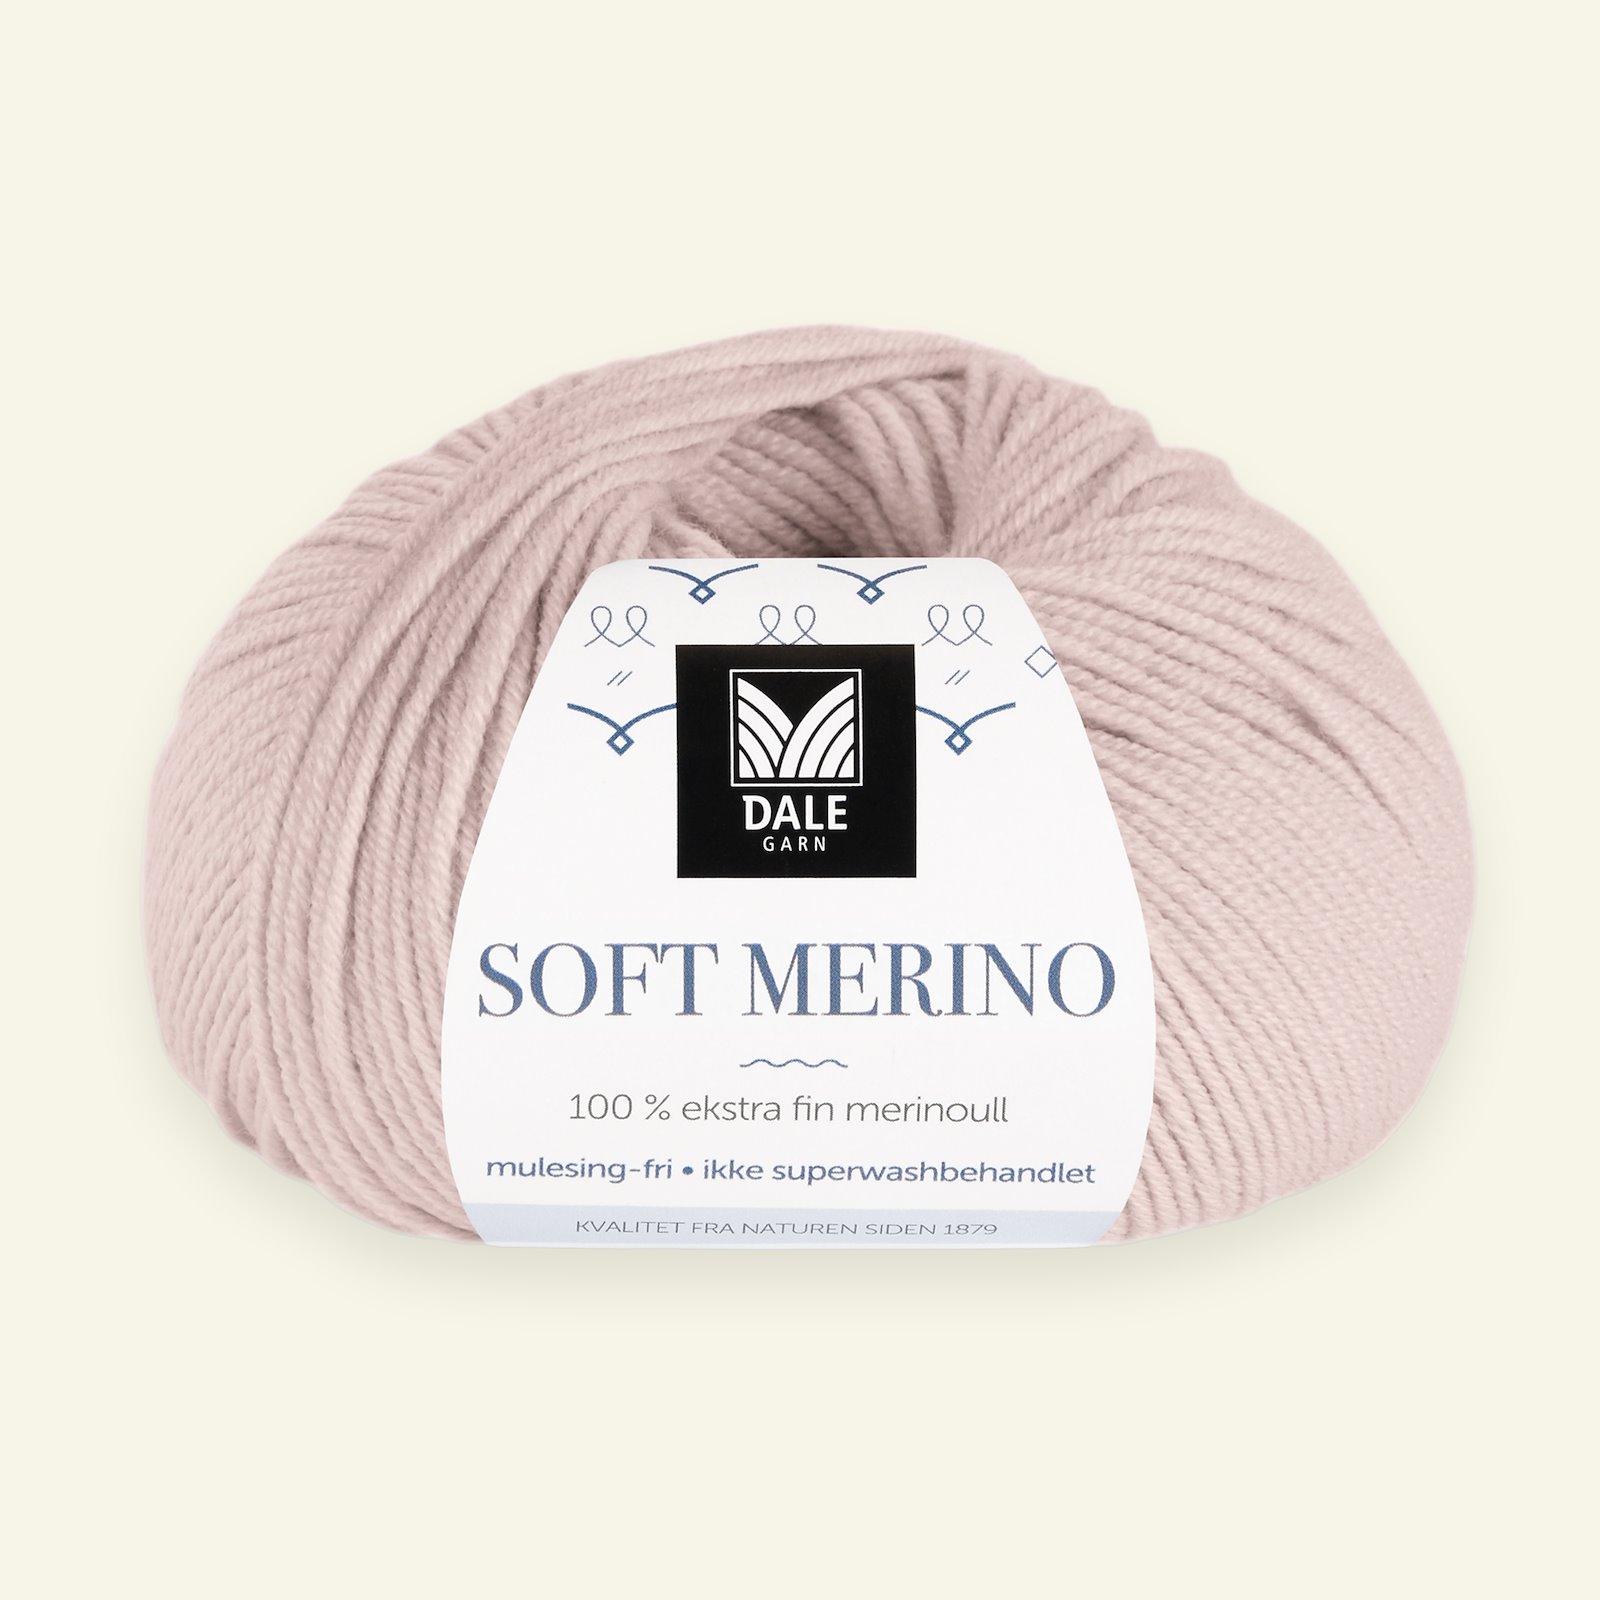 Dale Garn, 100% Extrafeine Merino-Wolle "Soft Merino", staubrosa (3032) 90000353_pack